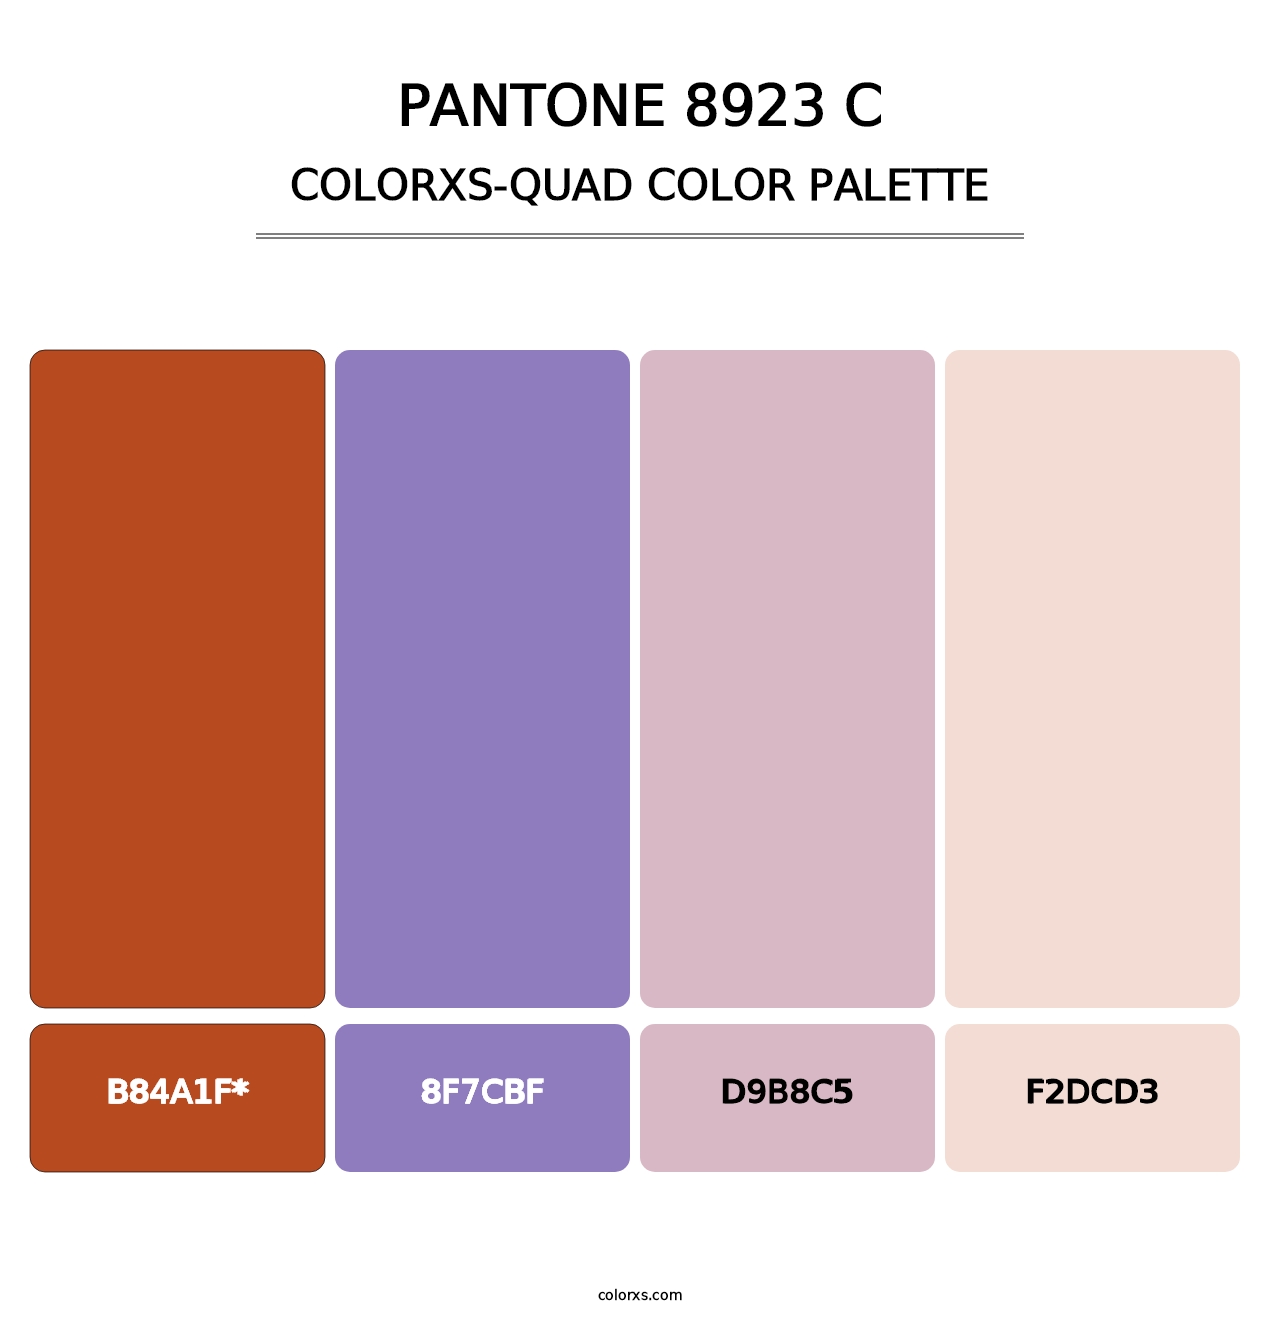 PANTONE 8923 C - Colorxs Quad Palette